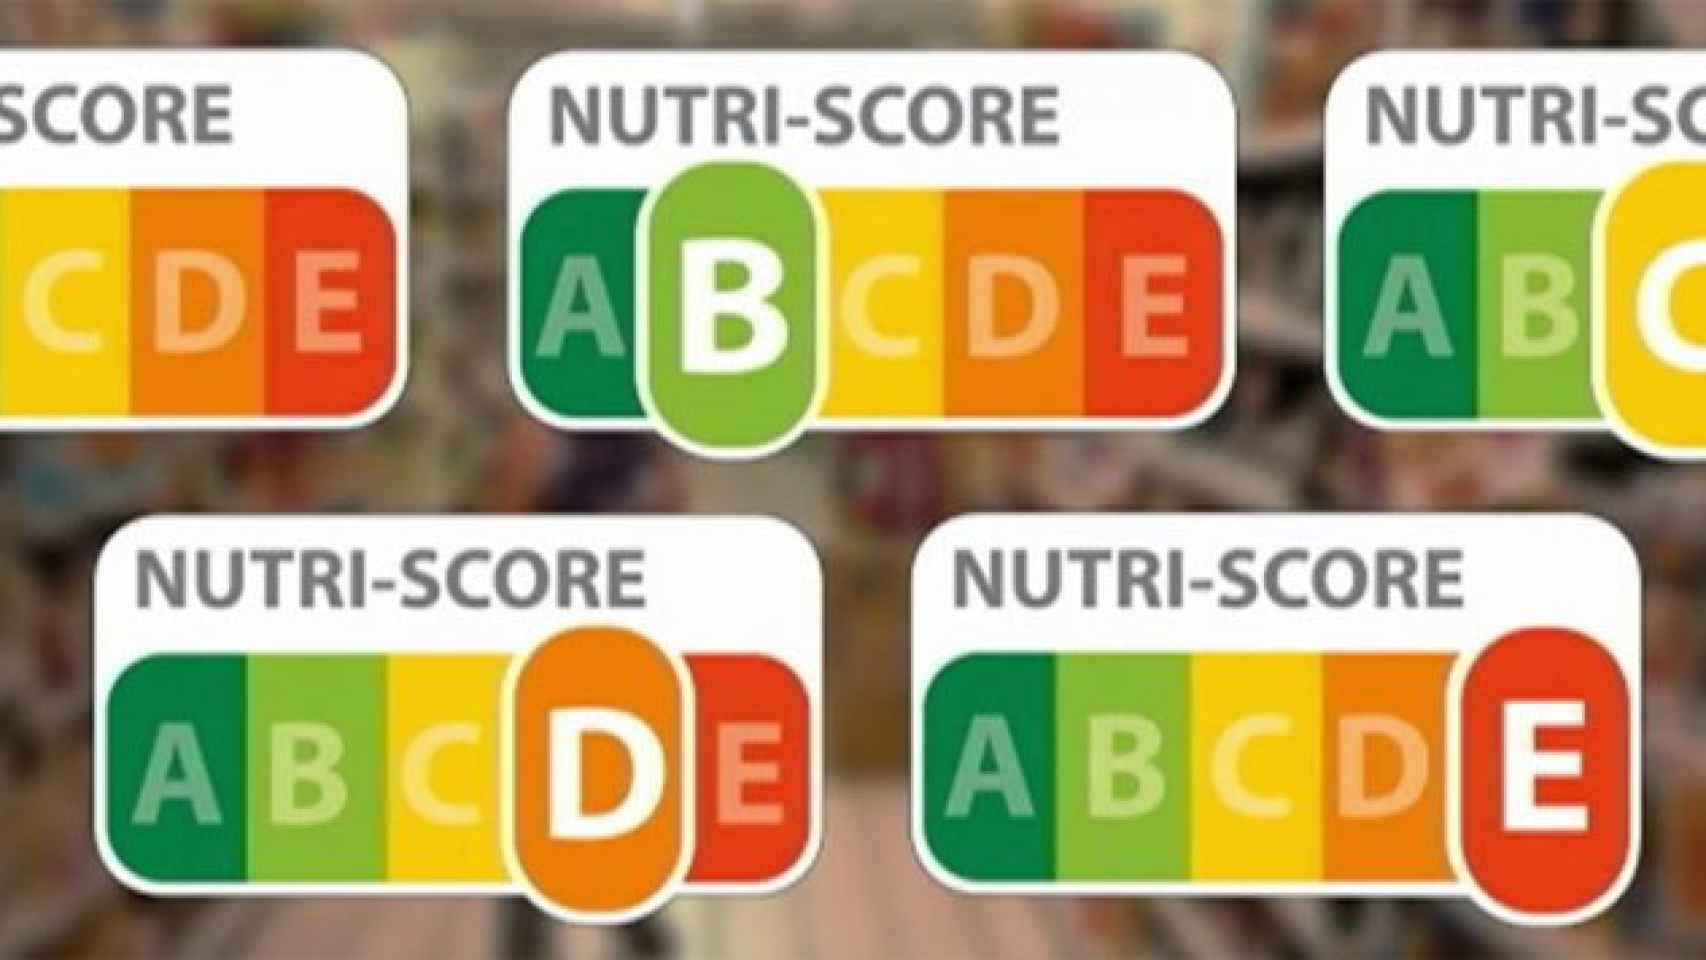 Distintas opciones del nuevo semáforo nutricional Nutri-score